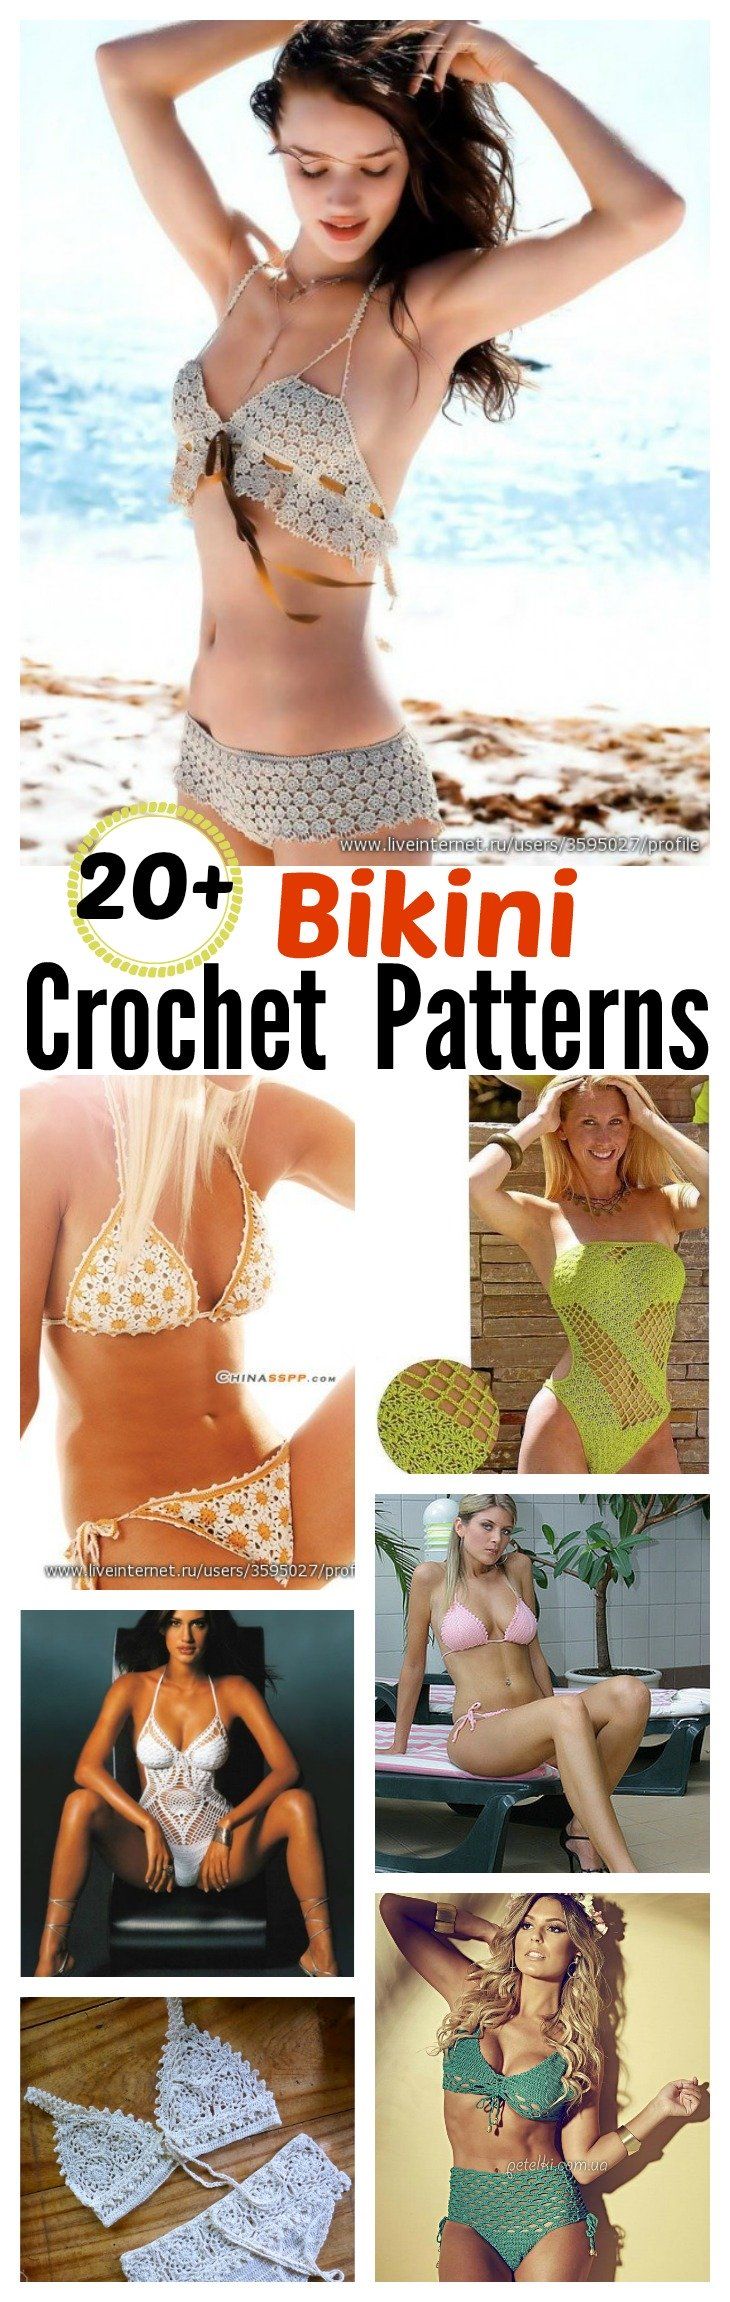 20+ Free Crochet Bikini Patterns – Page 3 of 3